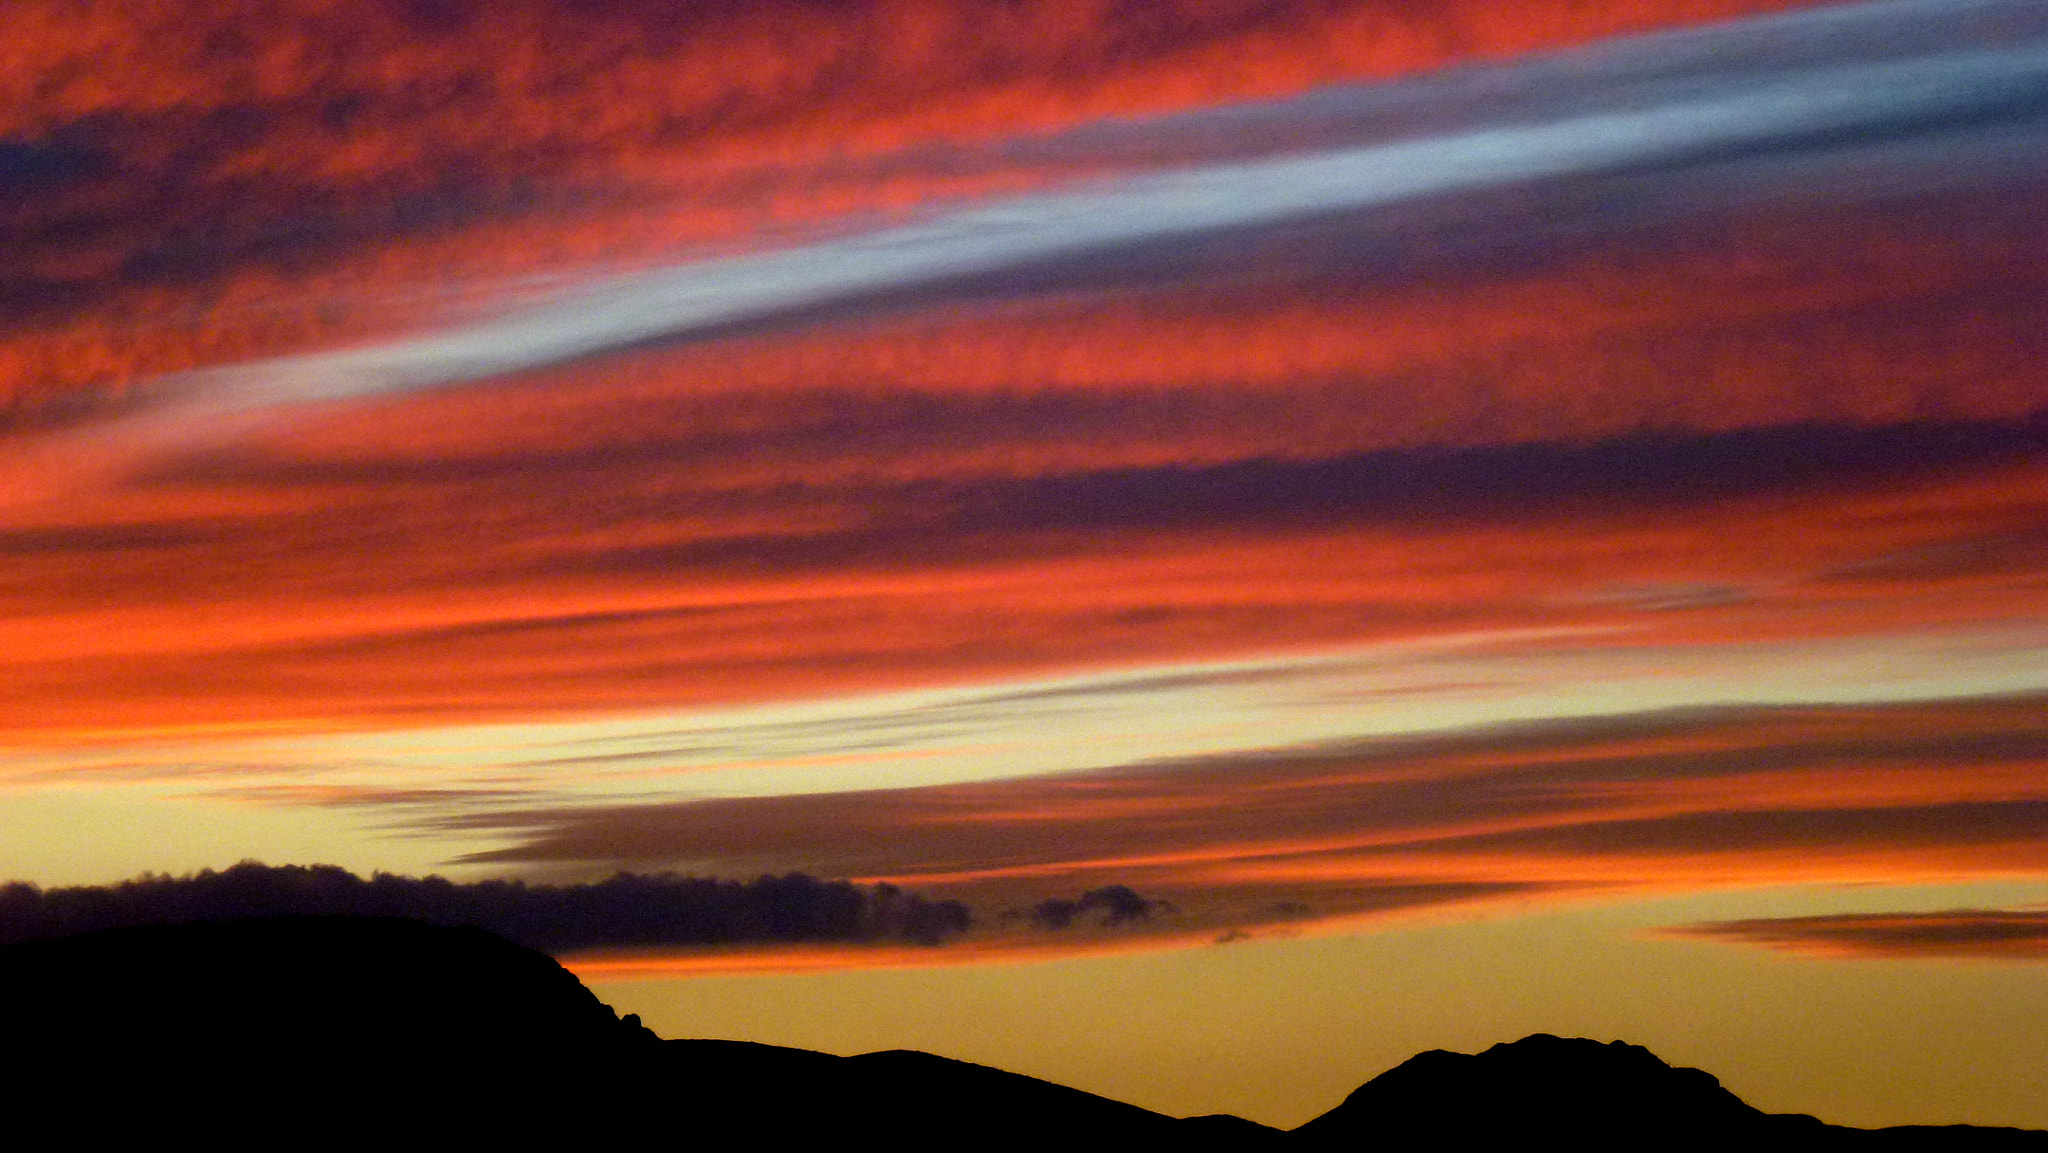 Panasonic DMC-ZS10 sample photo. Sunset in arizona photography